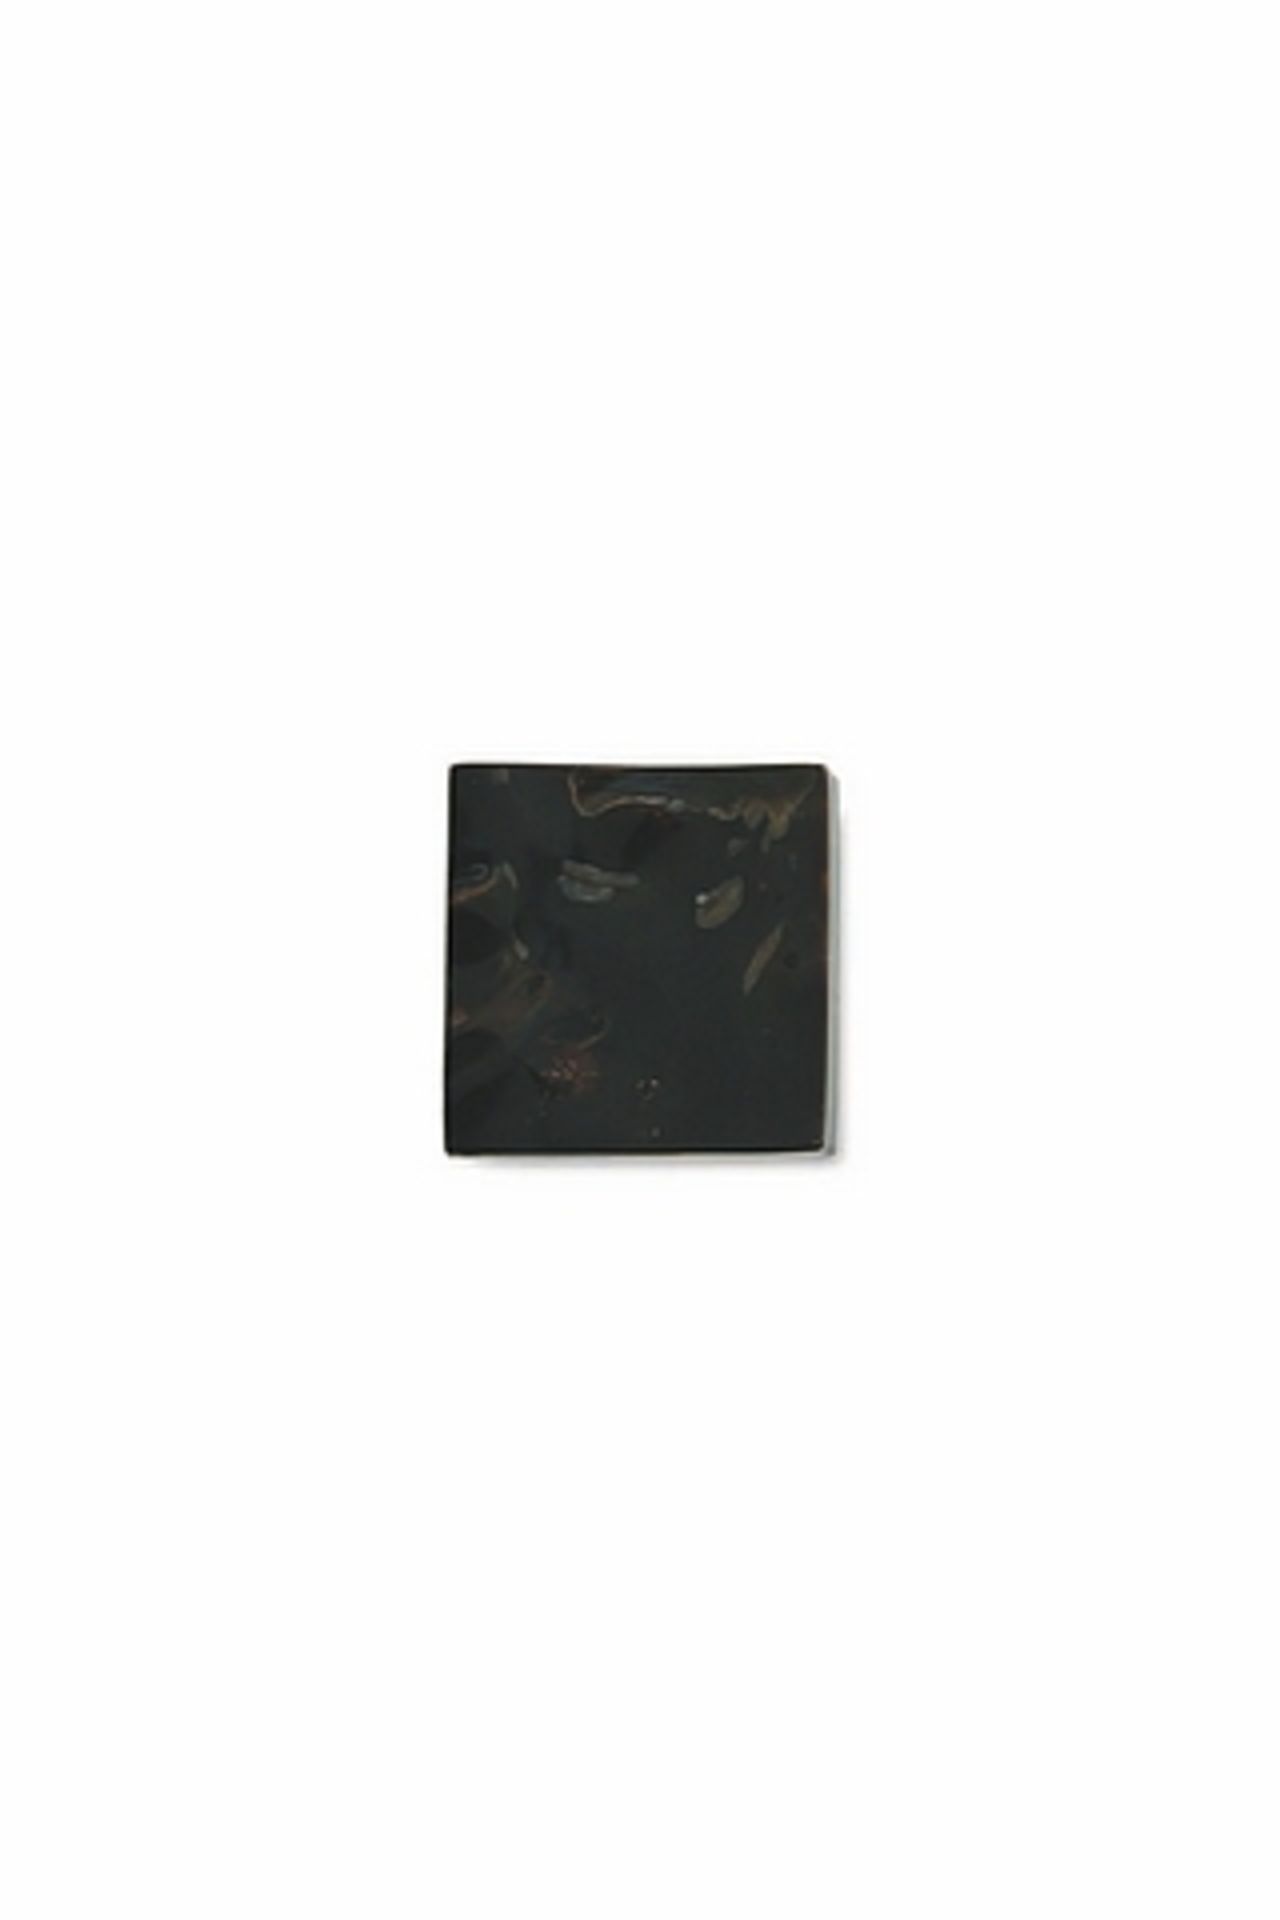 Handle Tag black large black tab shell 6x6x1.8cm Cravt SKU 398227